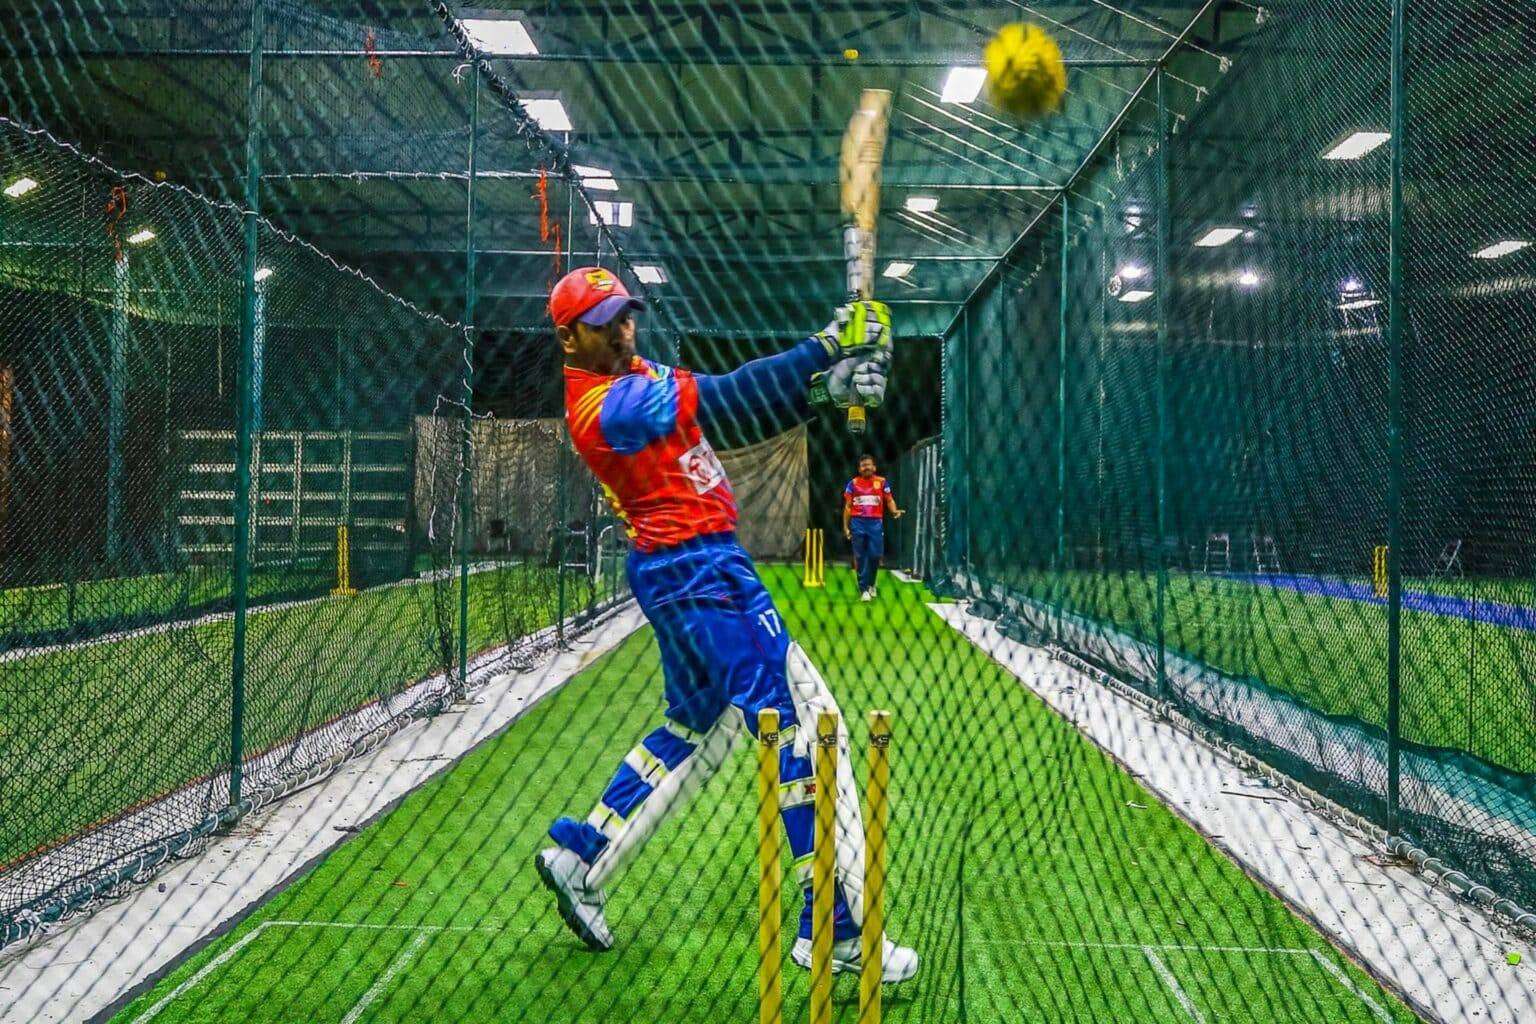 Indoor cricket net practice in Delhi